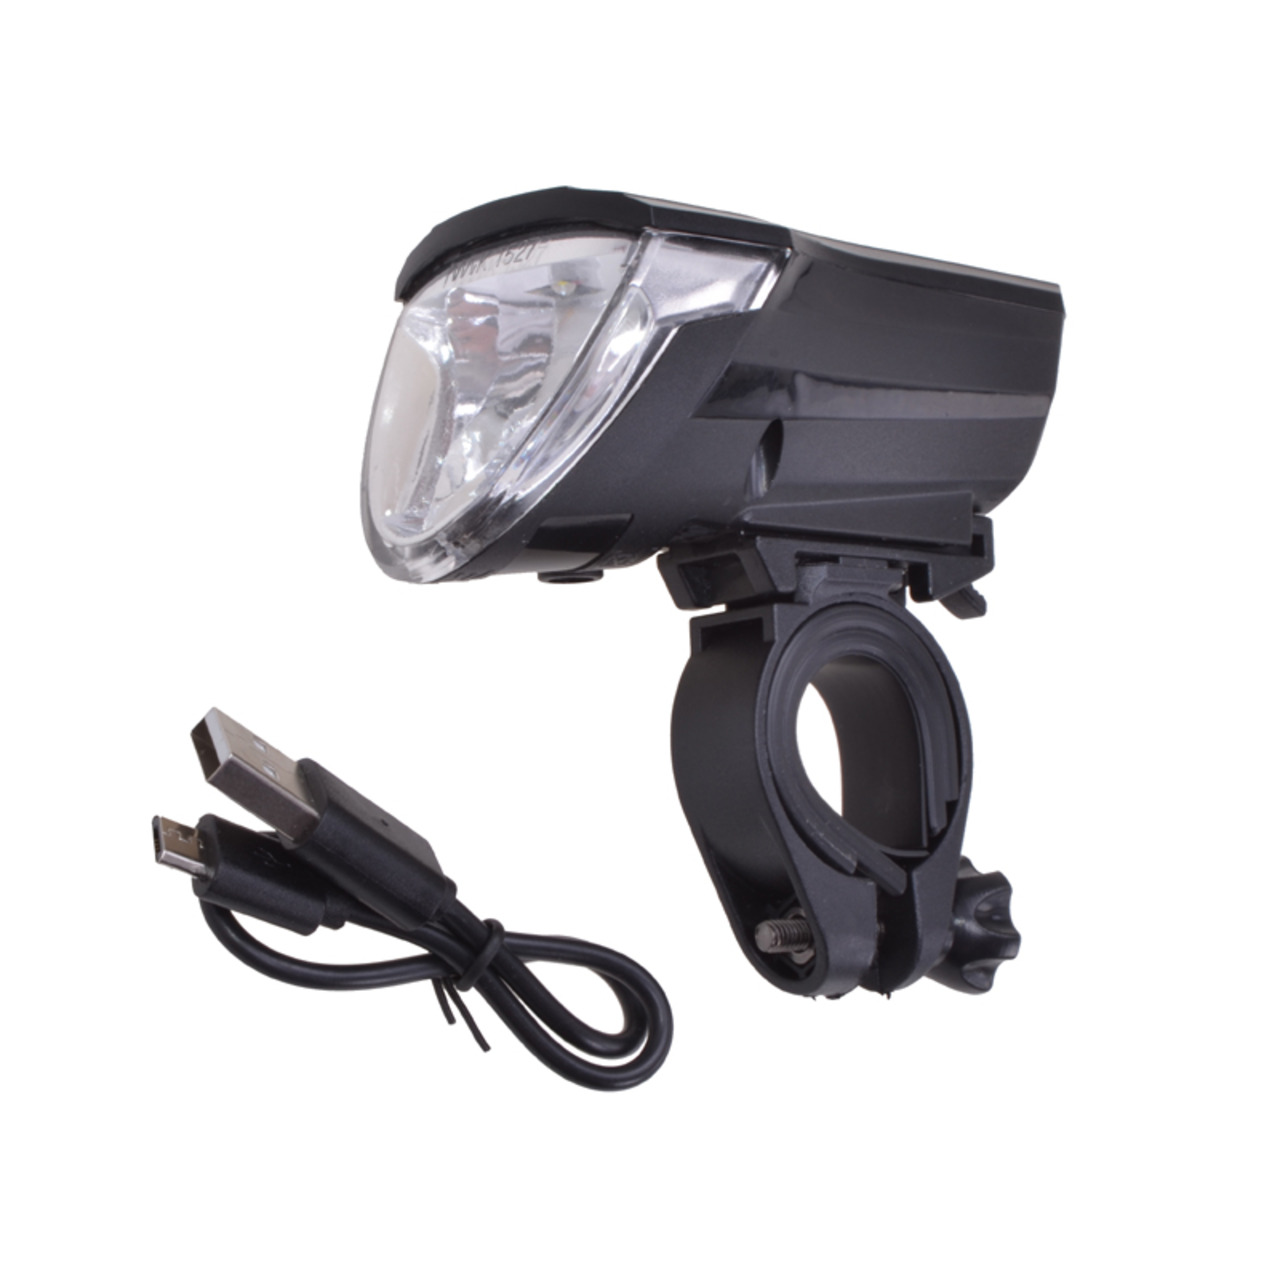 Filmer Fahrrad-LED-Frontlicht 49024- 3 Leuchtstufen- mit Helligkeitssensor- IPX4 unter Freizeit- und Outdoortechnik